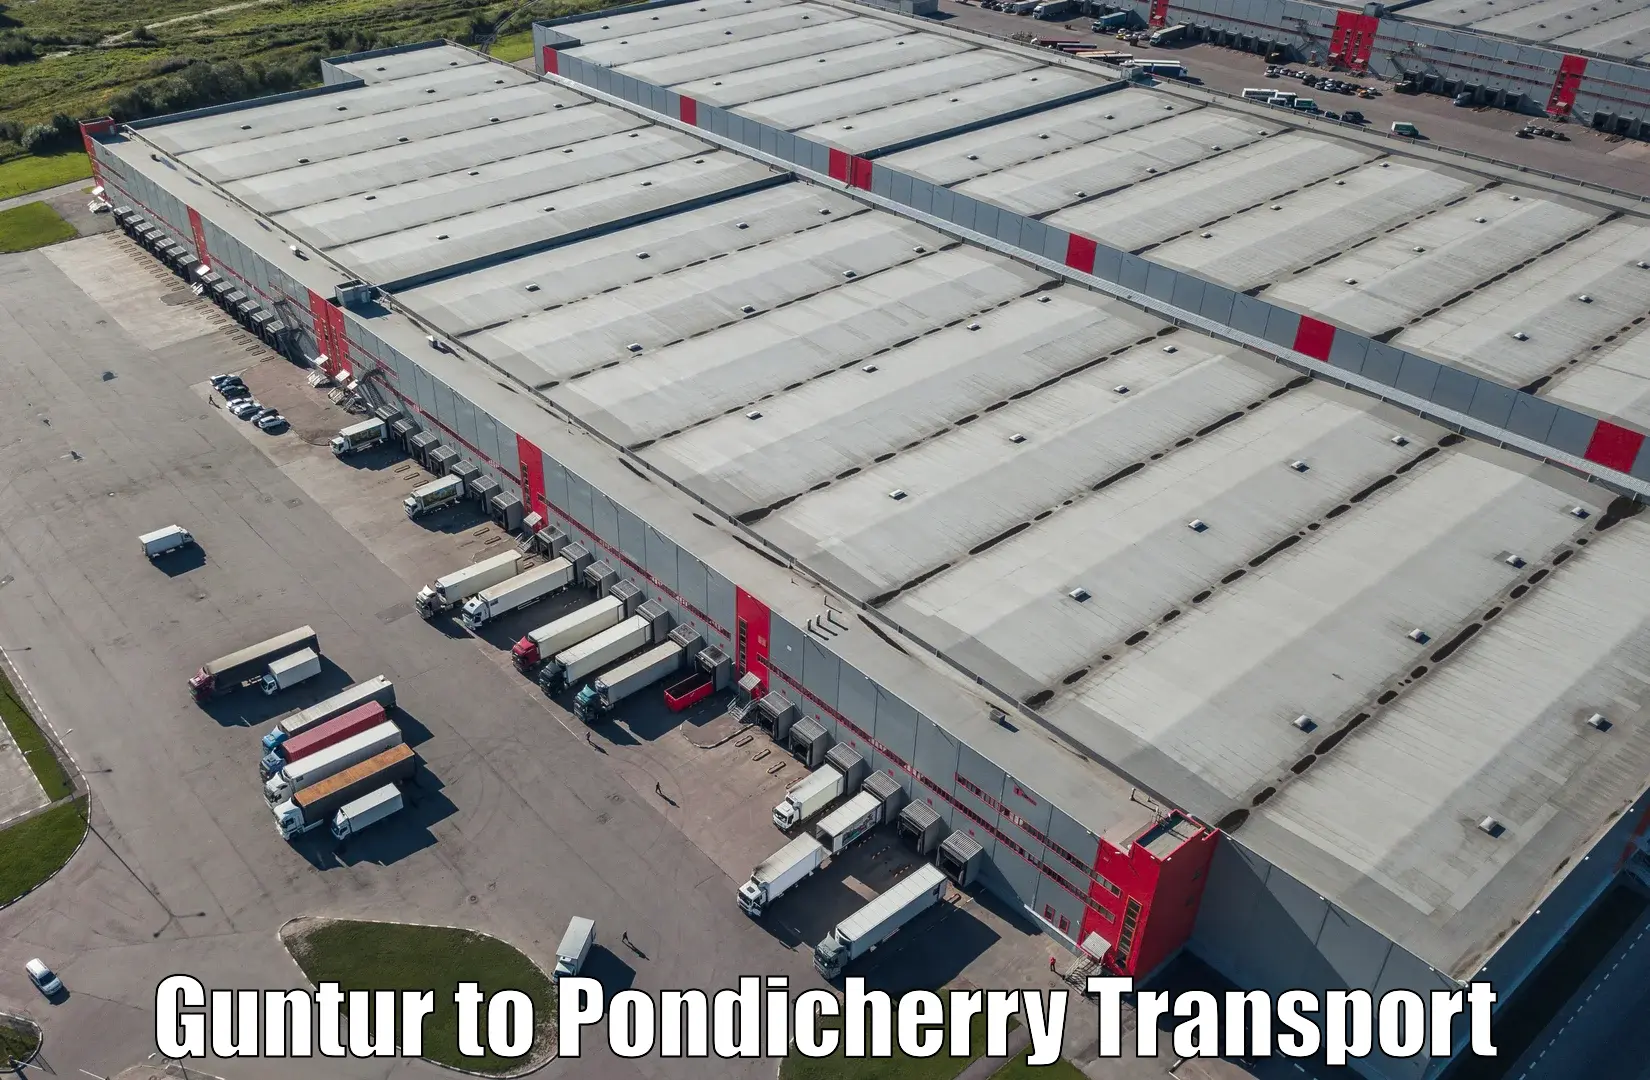 Air freight transport services Guntur to Pondicherry University